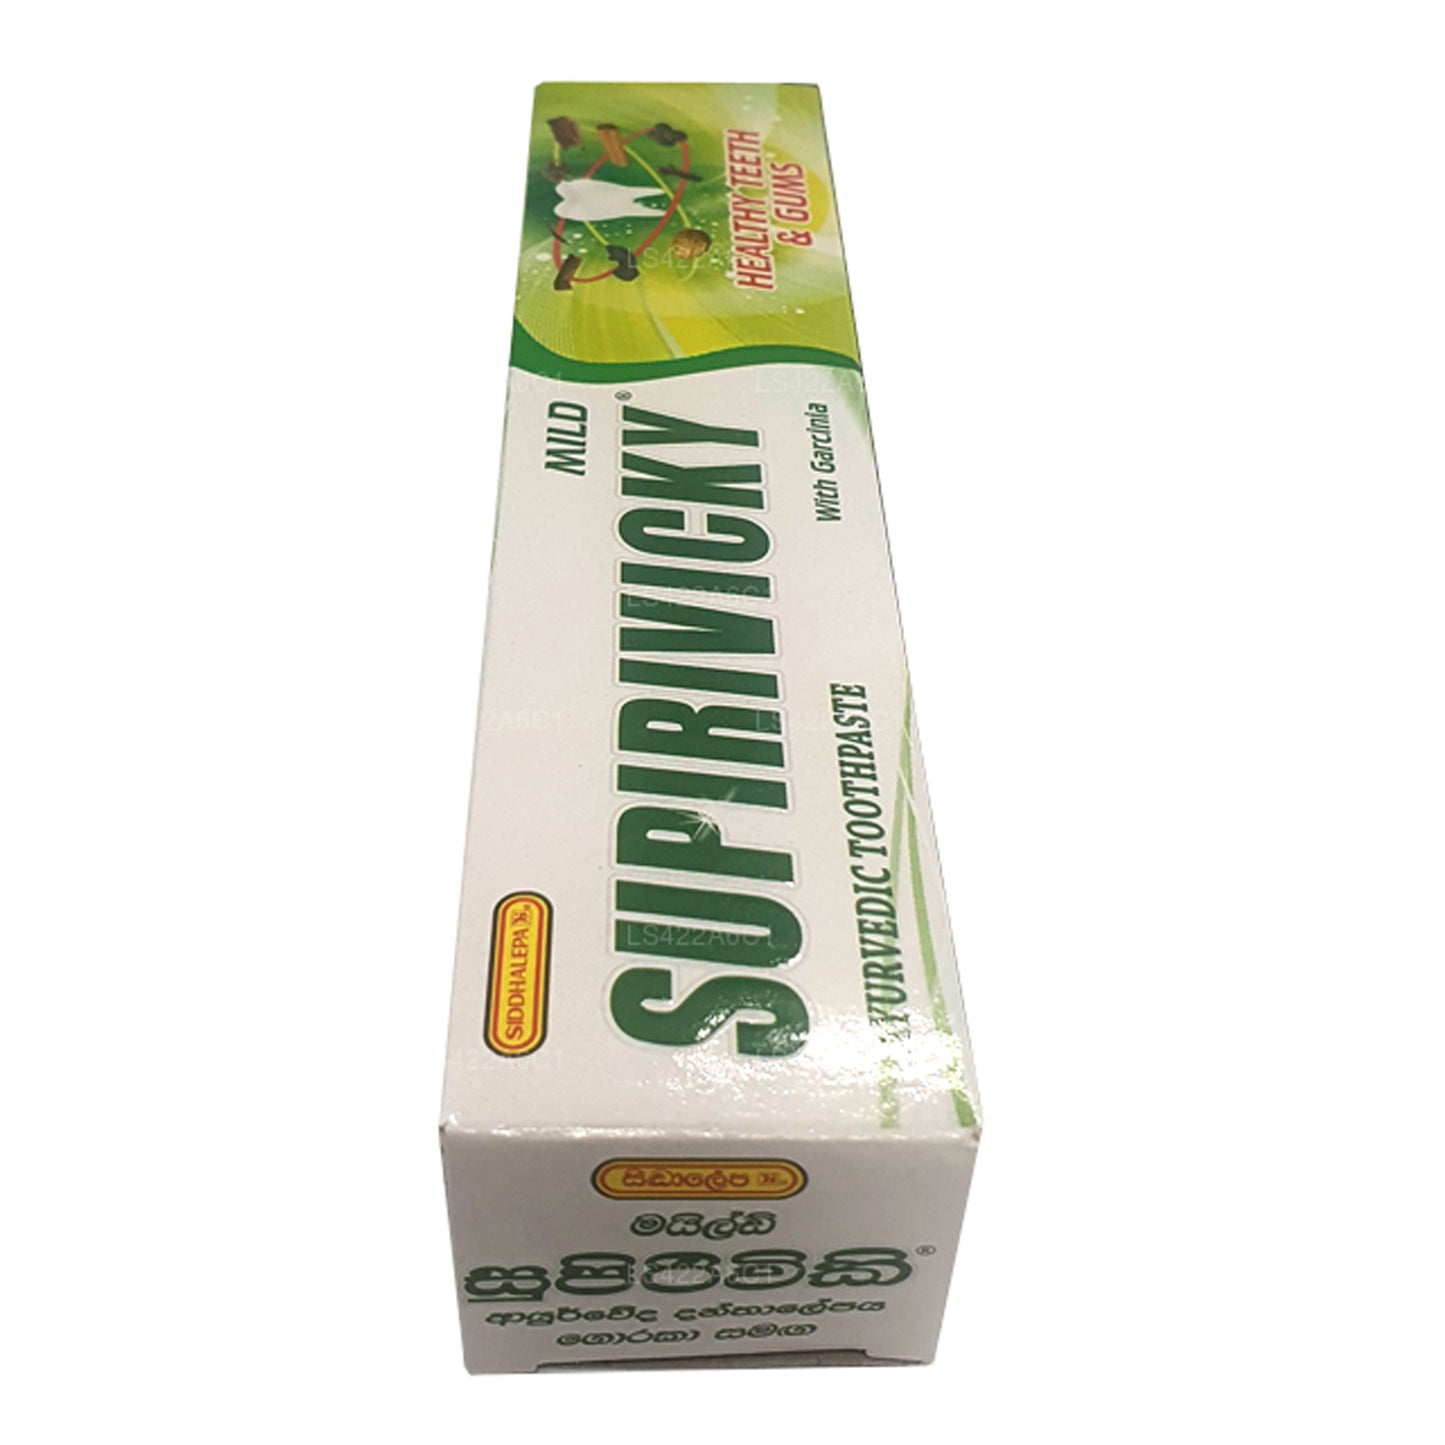 Pasta de dientes ayurvédica suave Siddhalepa Supirivicky (40 g)